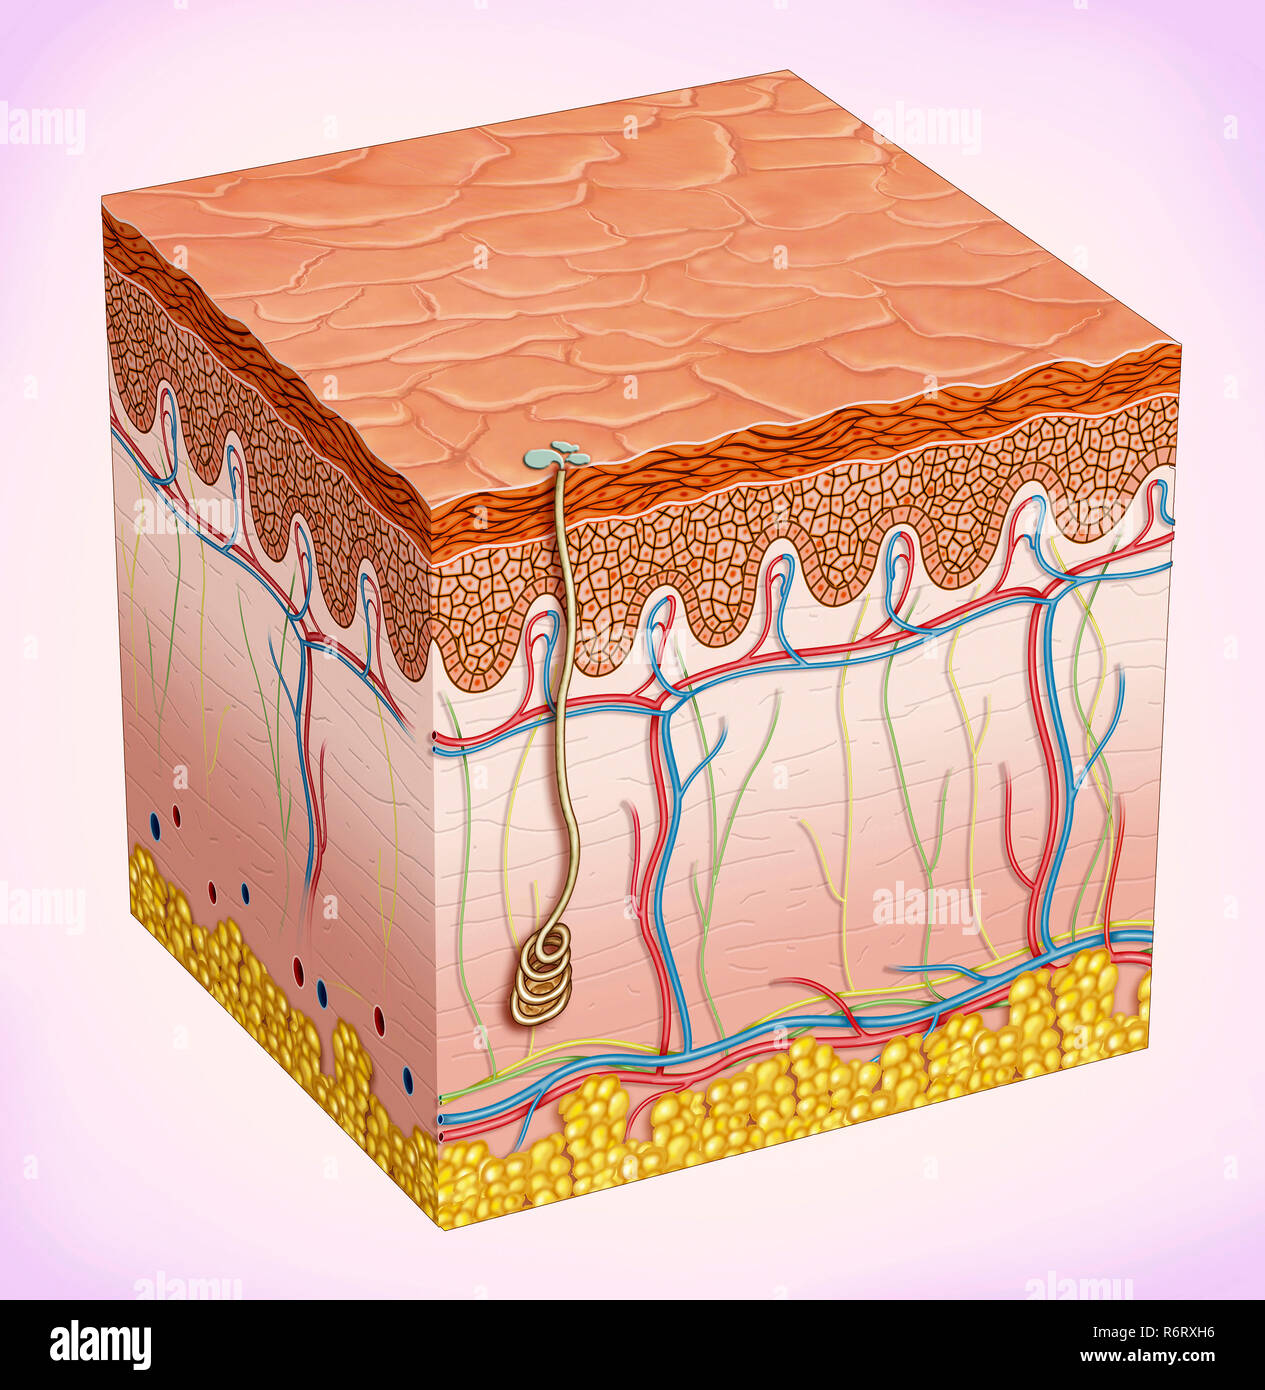 La pelle è composta da tre strati: Epidermide, derma e tessuto sottocutaneo. La sua funzione è quella di proteggere il corpo dall'ambiente. Foto Stock